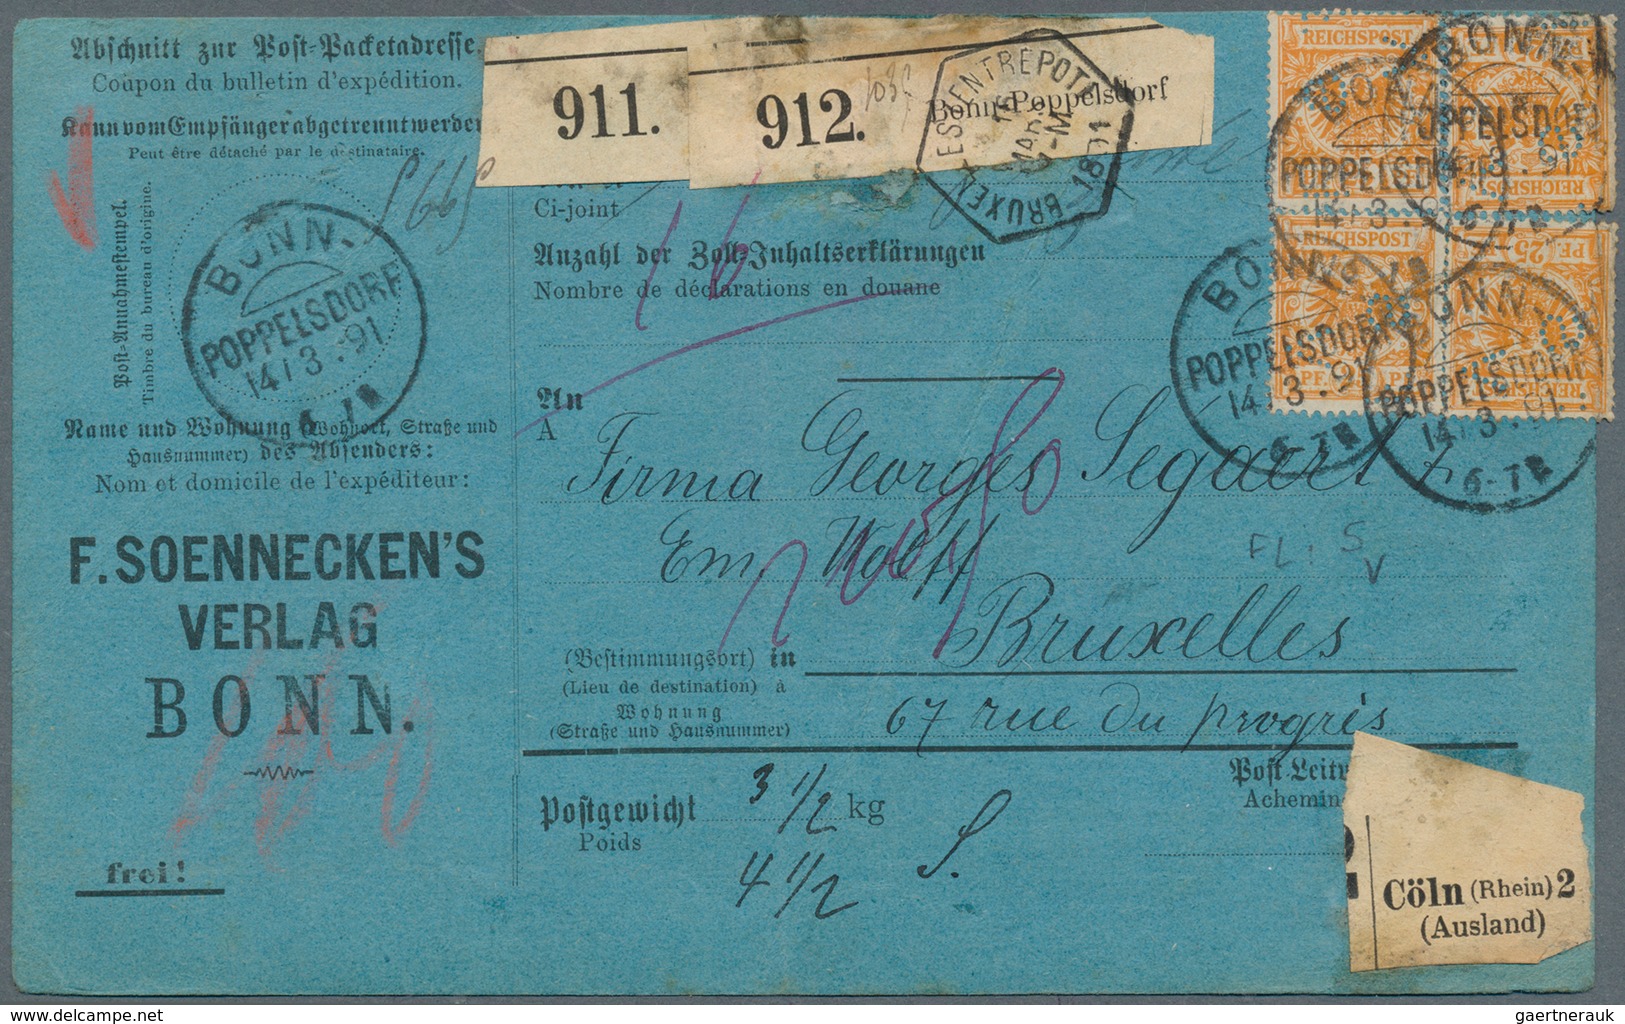 31533 Deutsches Reich - Krone / Adler: 1889/1902, interessanter Posten von ca. 140 Belegen Krone/Adler mit